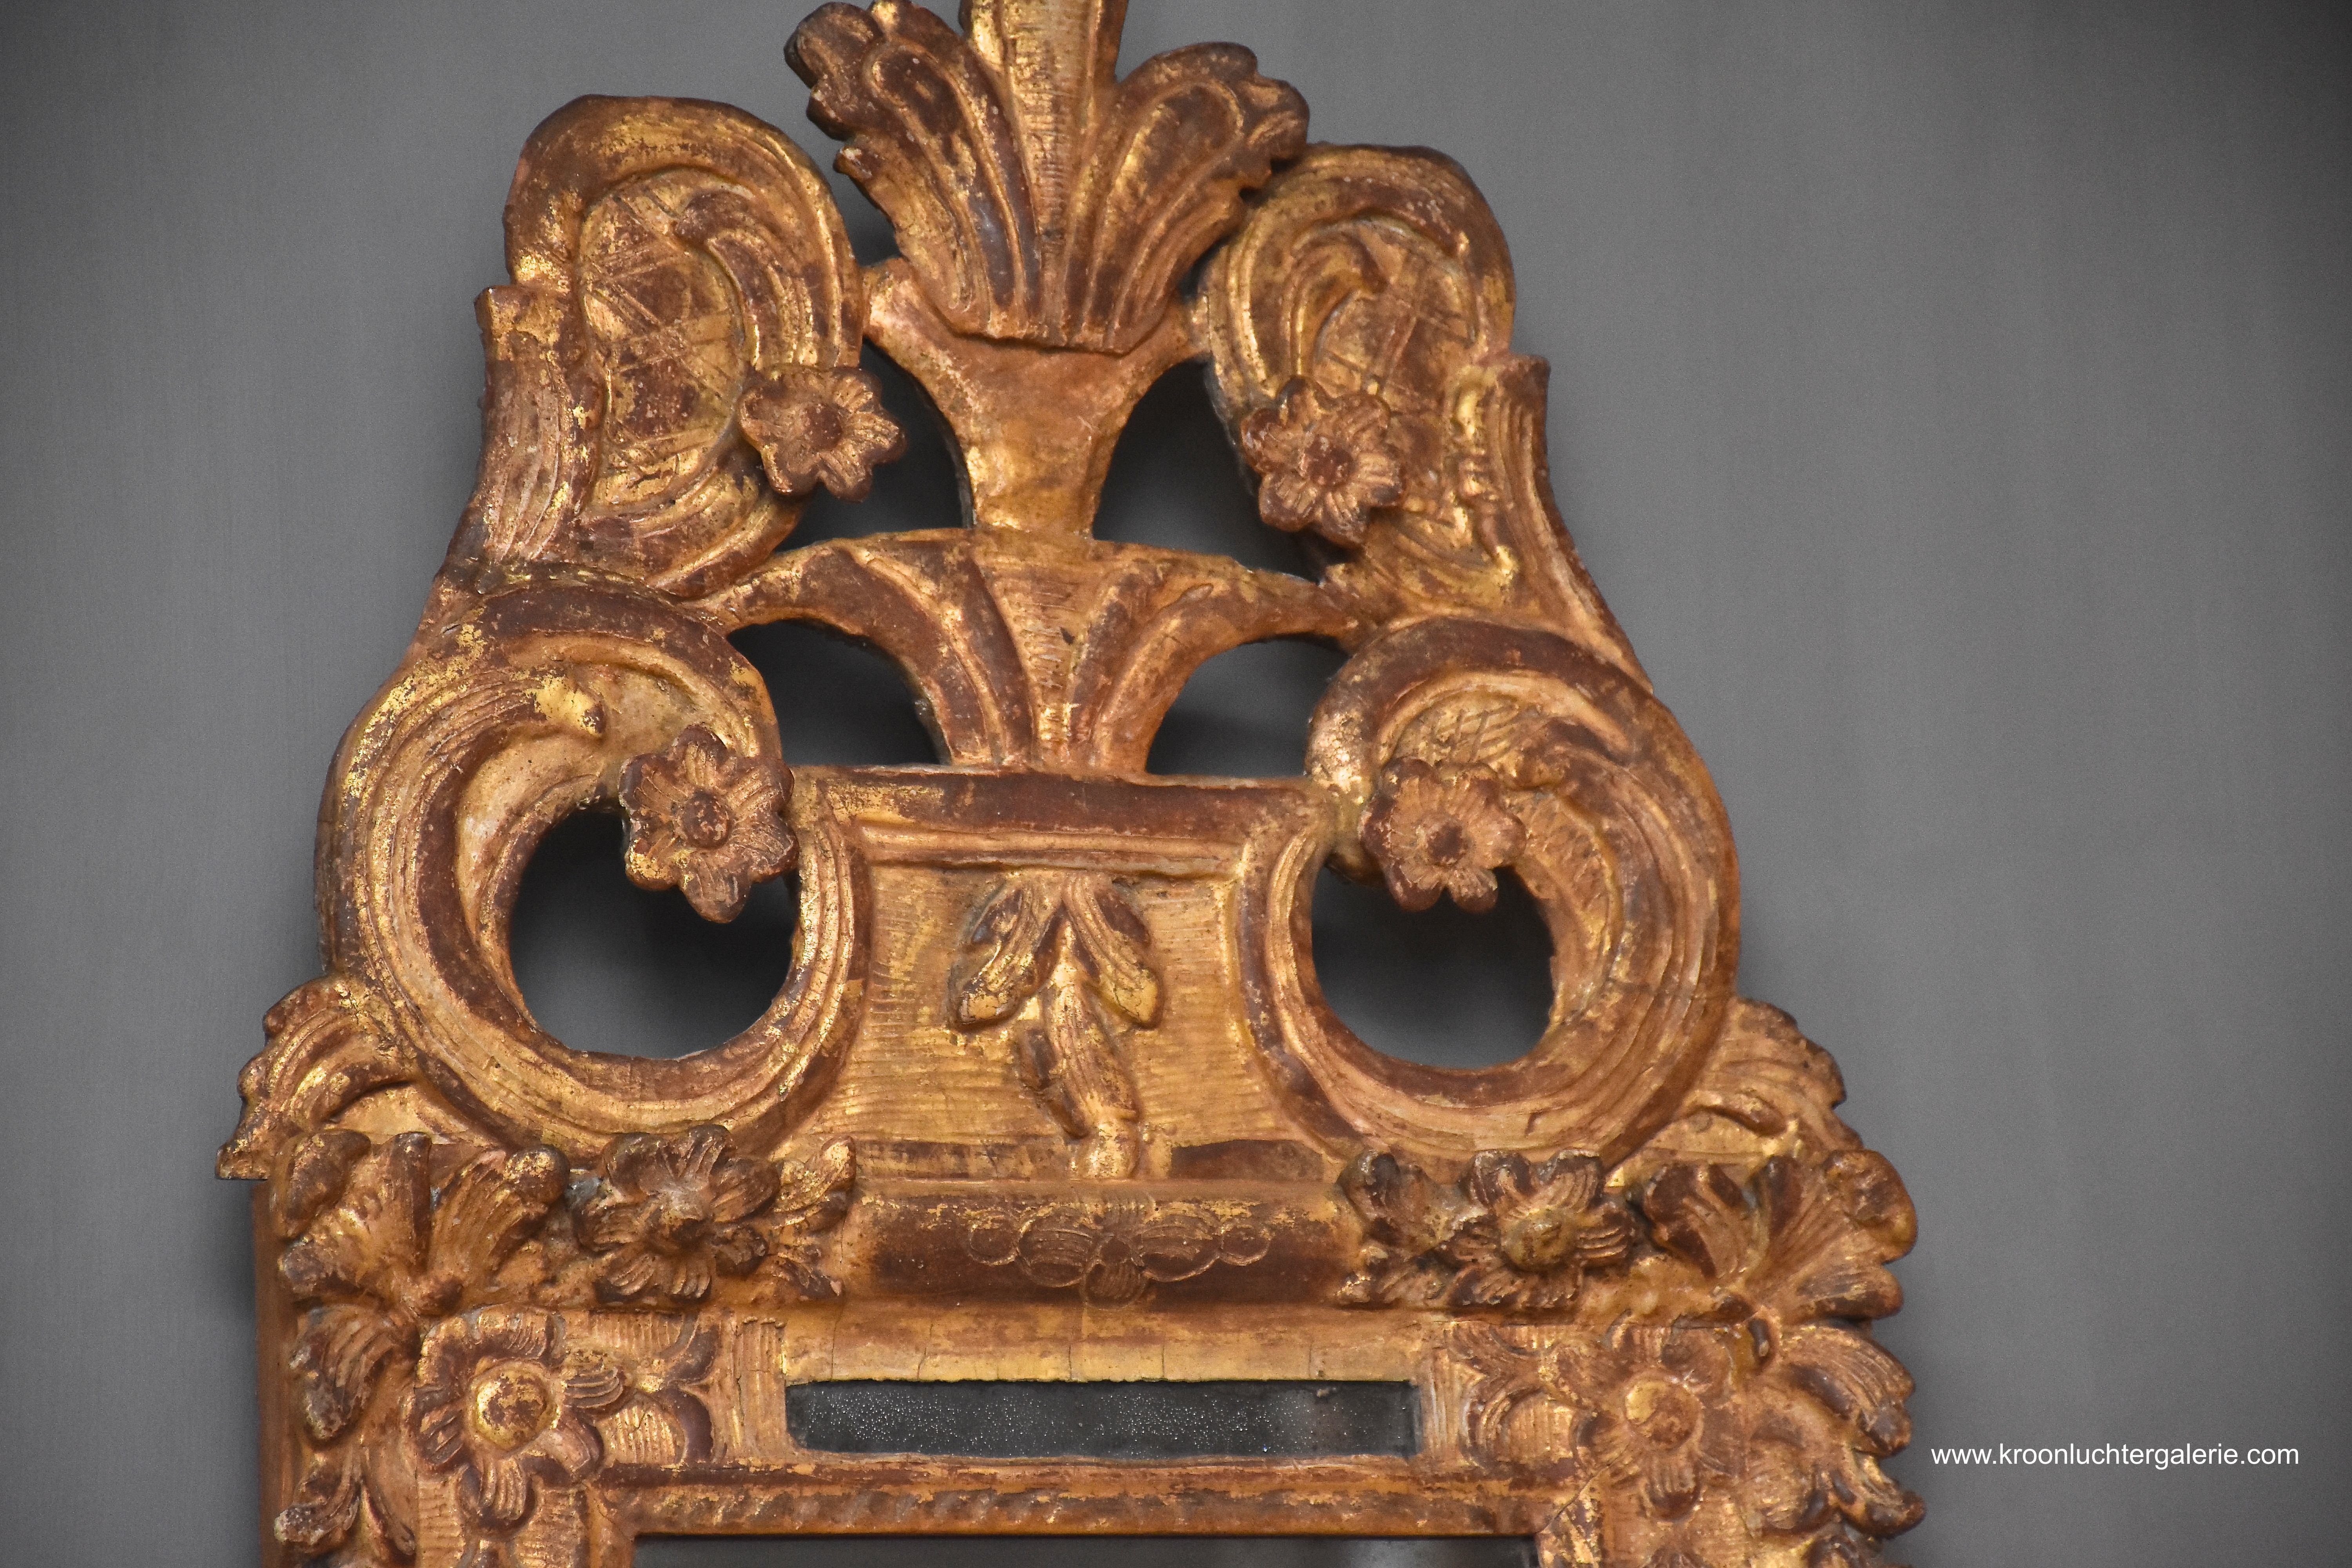 18th century French mirror, epoque Louis XIV